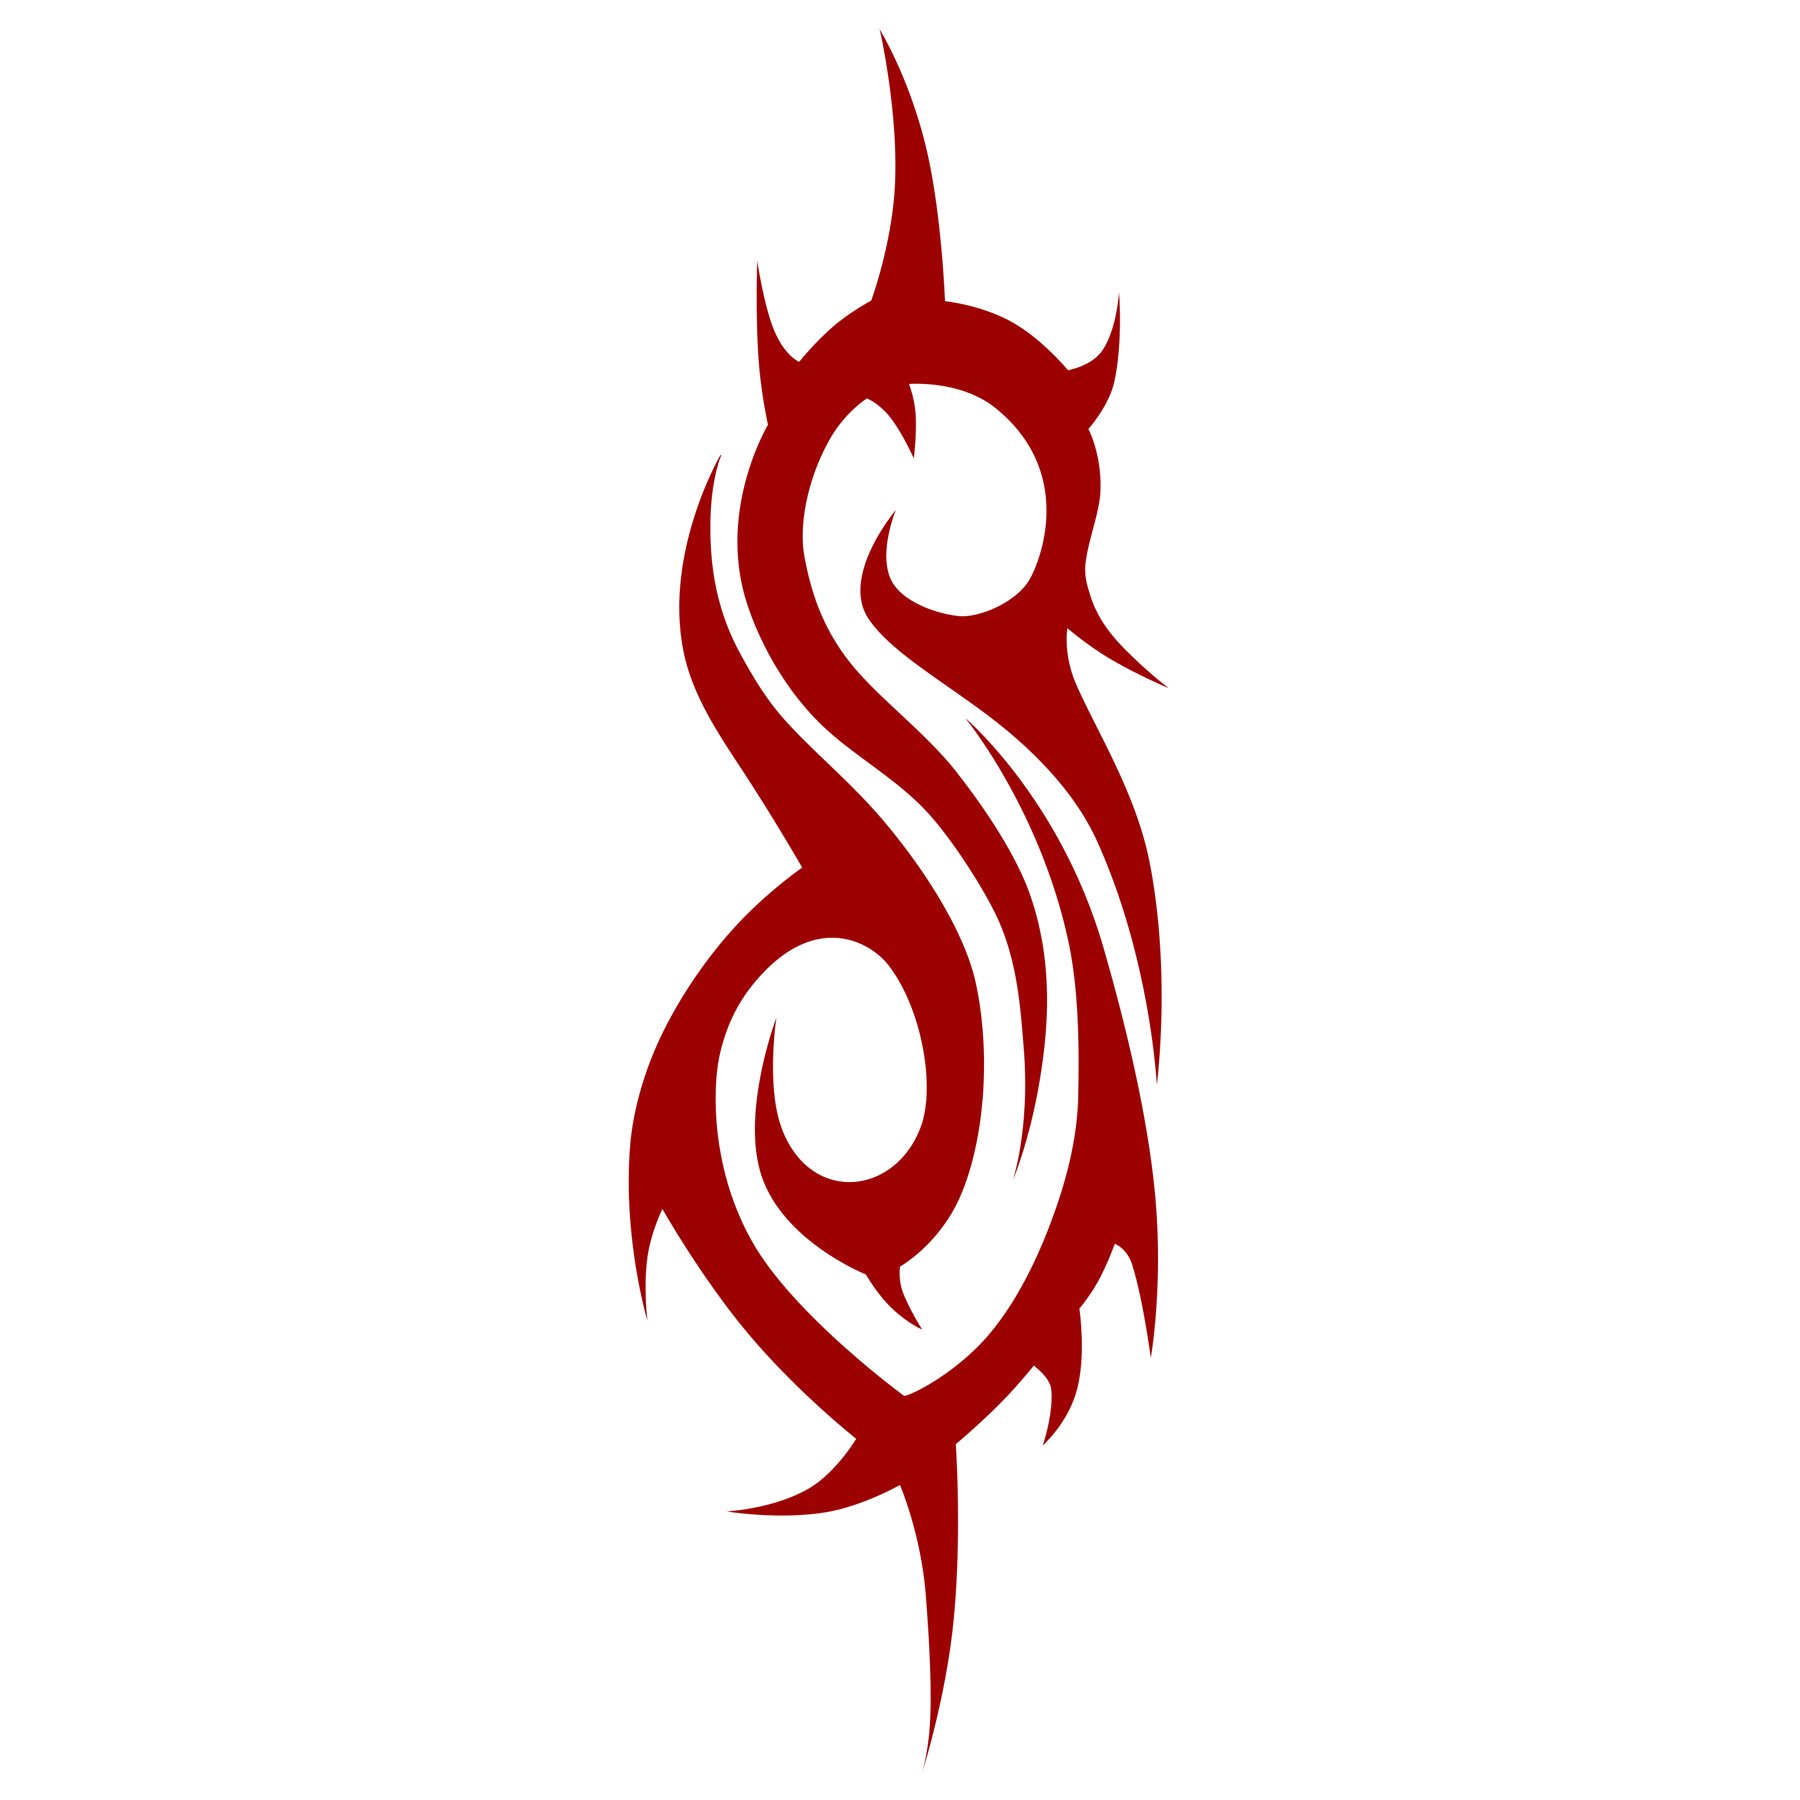 Slipknot Logo, Slipknot Symbol, Meaning, History and Evolution